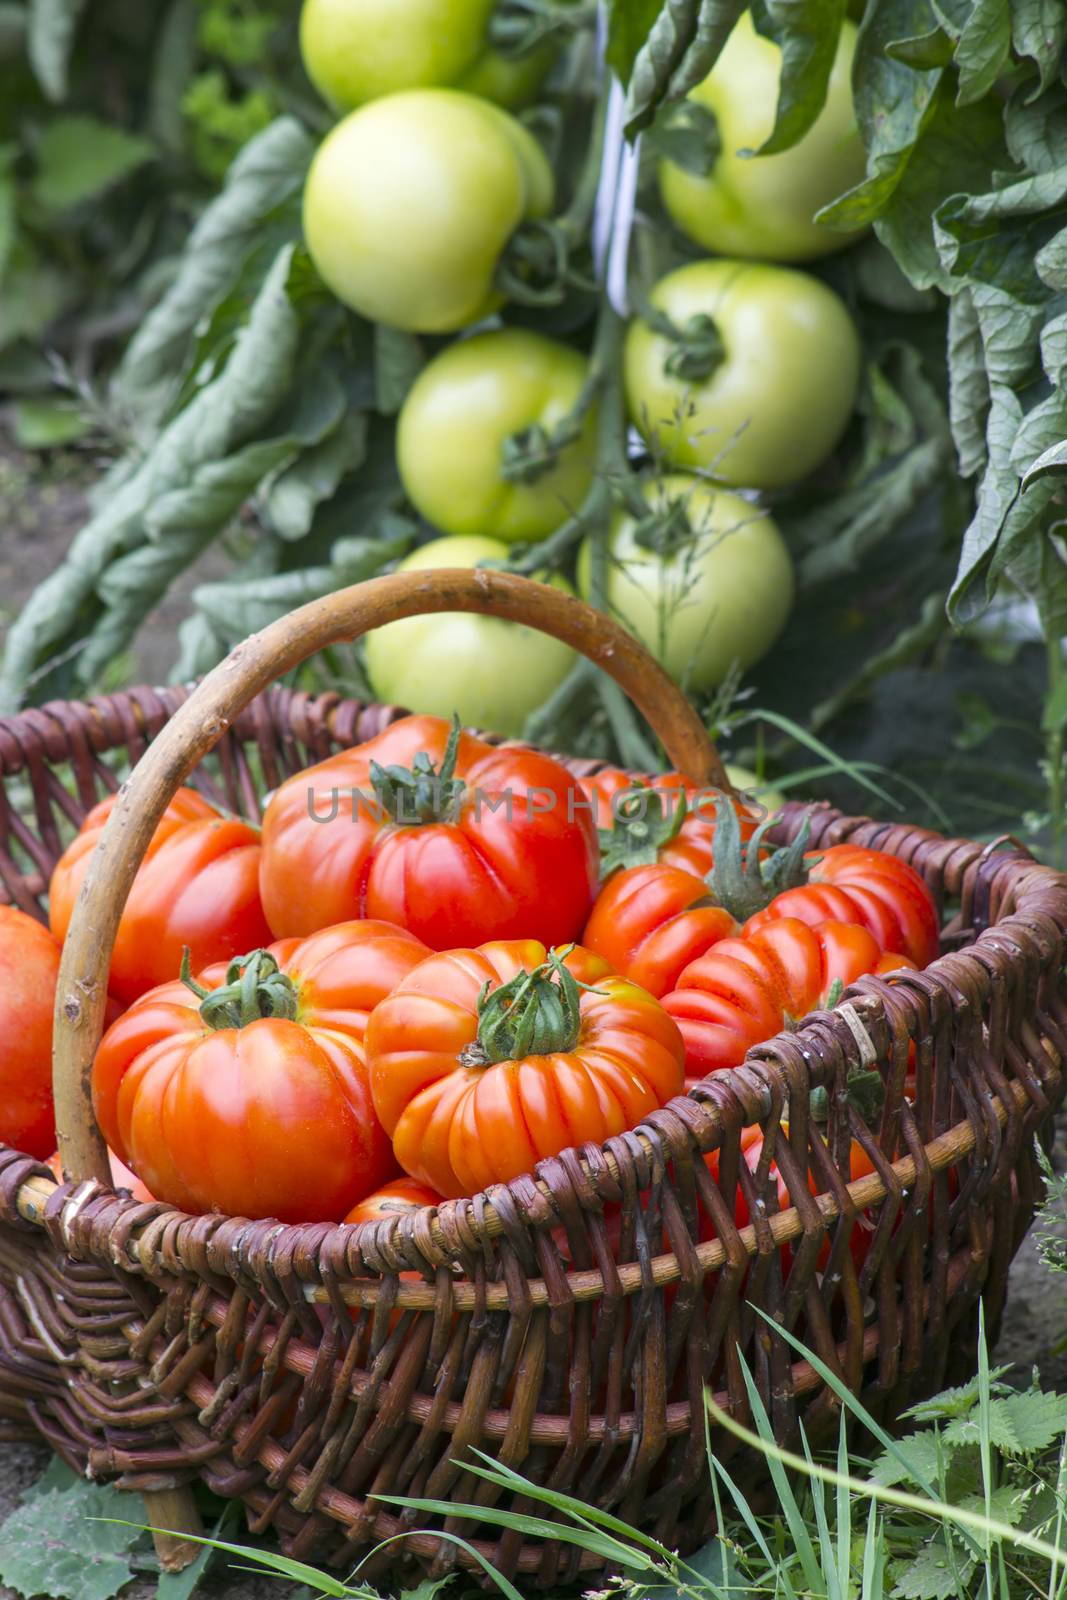 basket full of freshly harvested tomatoes